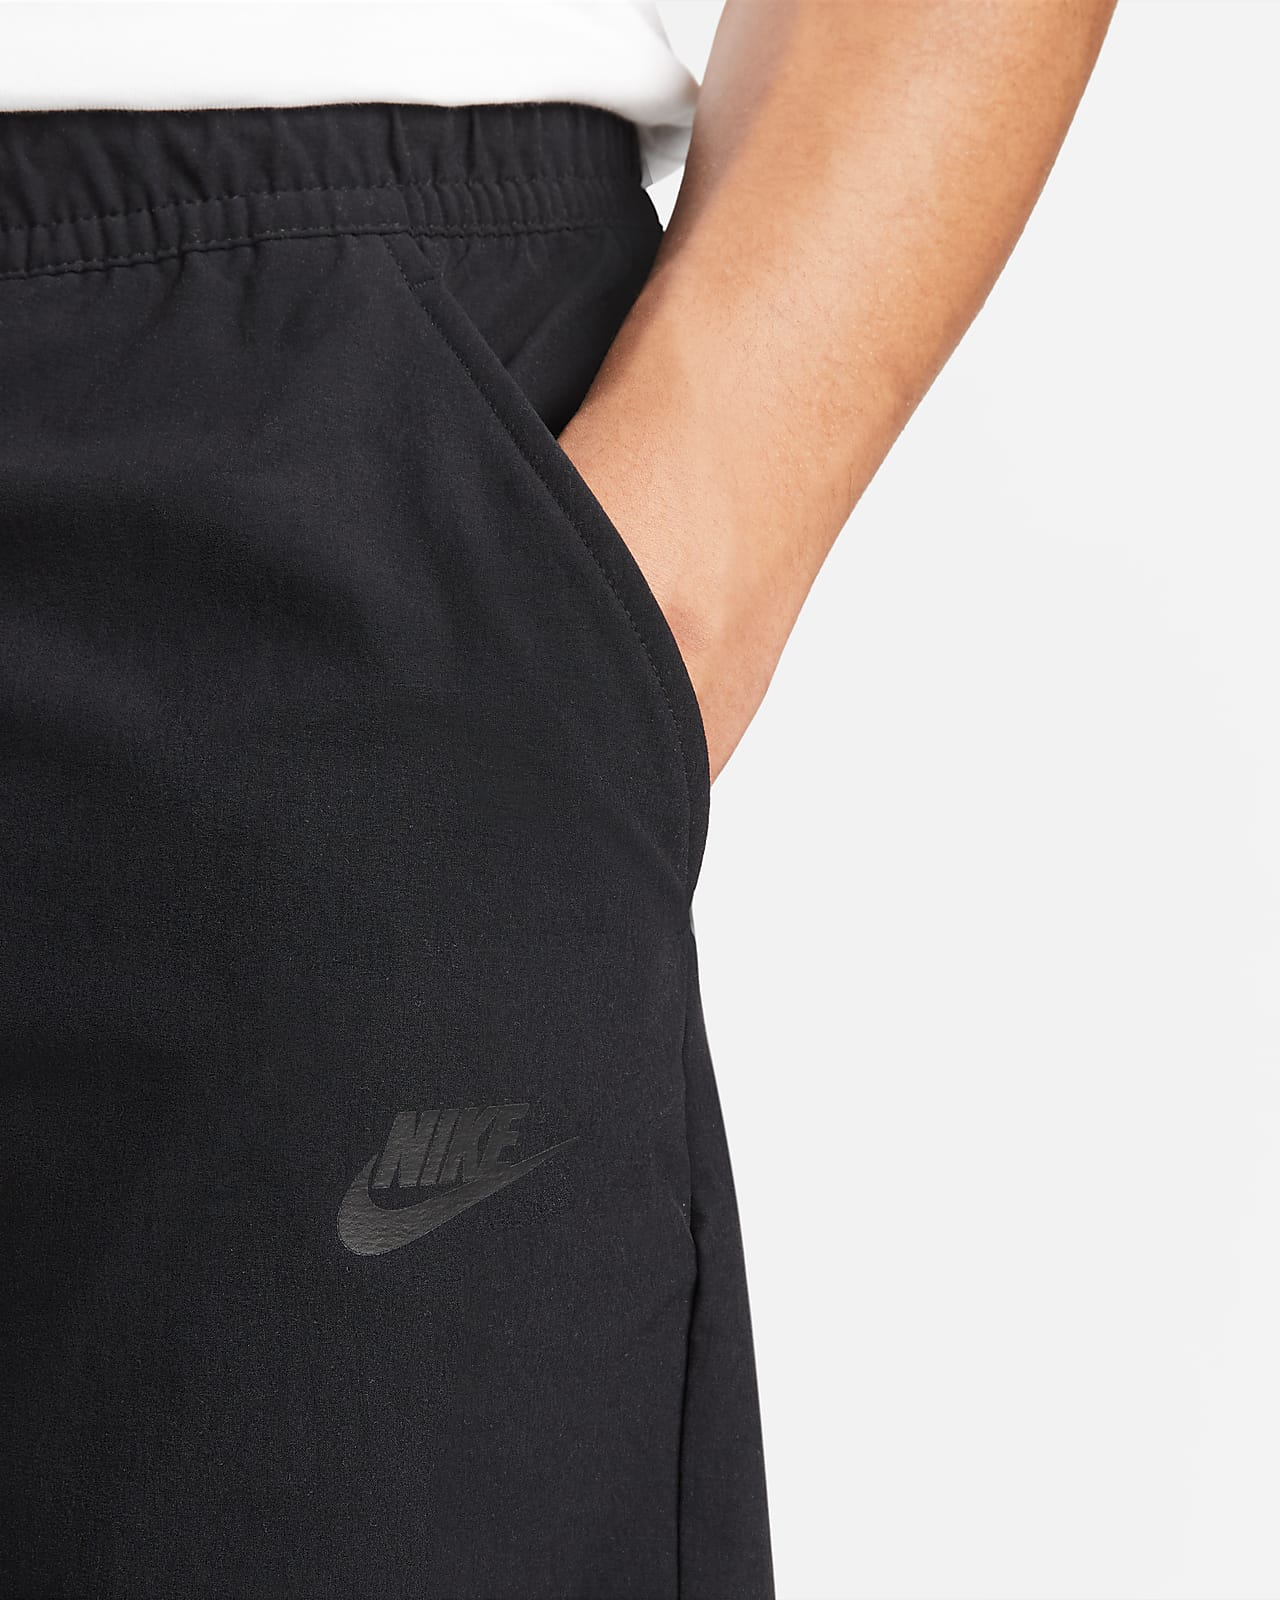 Nike Sportswear Men's Woven Commuter Trousers. Nike NL